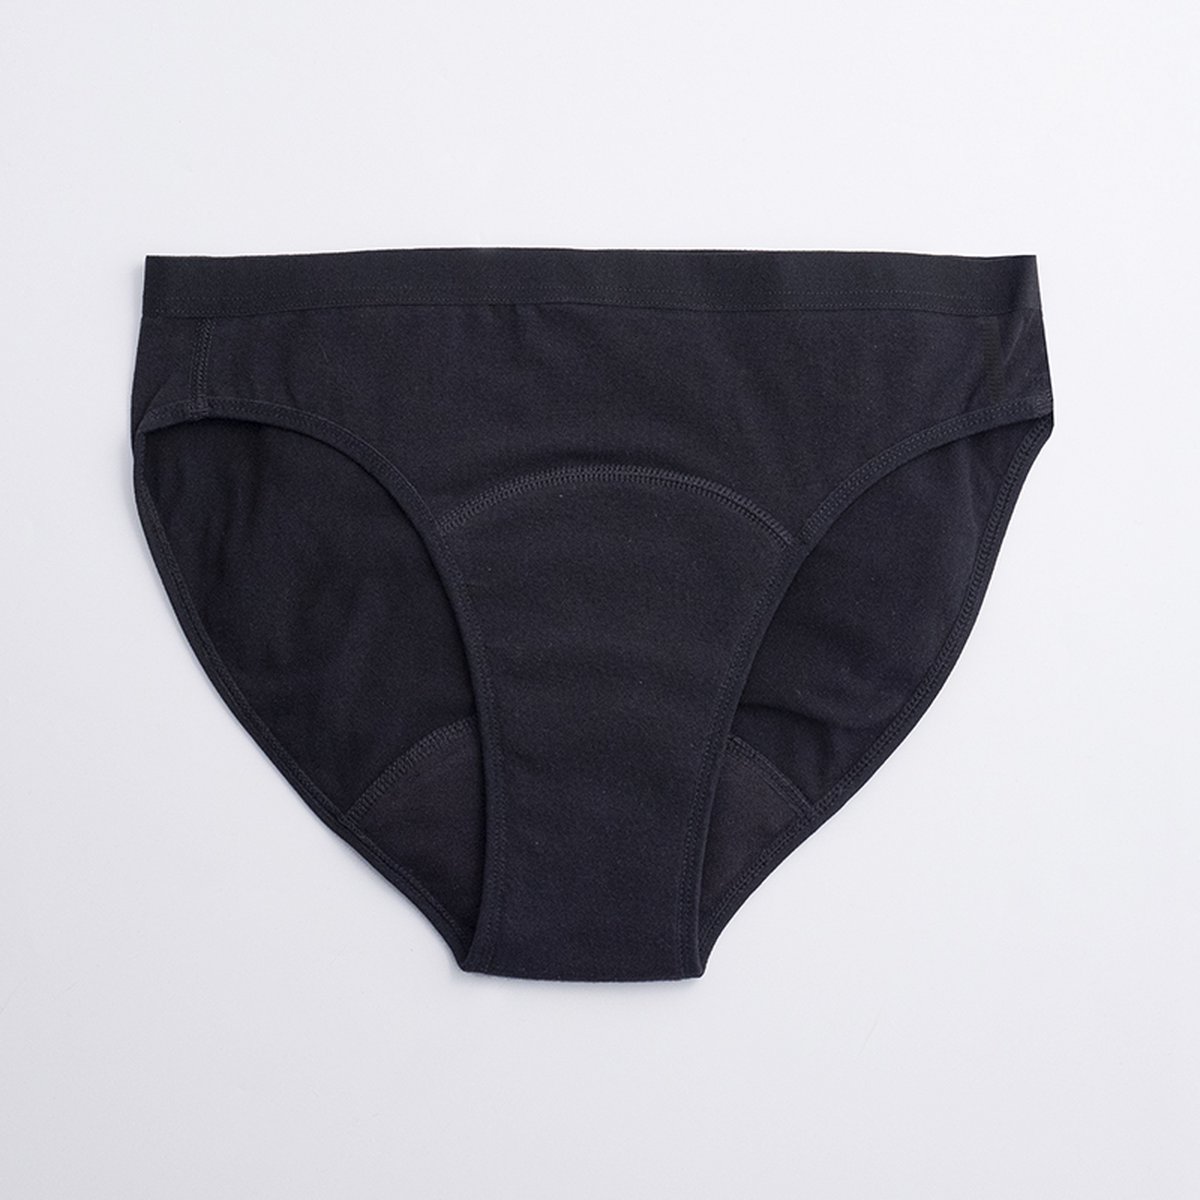 ImseVimse - Imse - menstruatieondergoed - Bikini model period underwear - lichte menstruatie - S - eur 36/38 - zwart